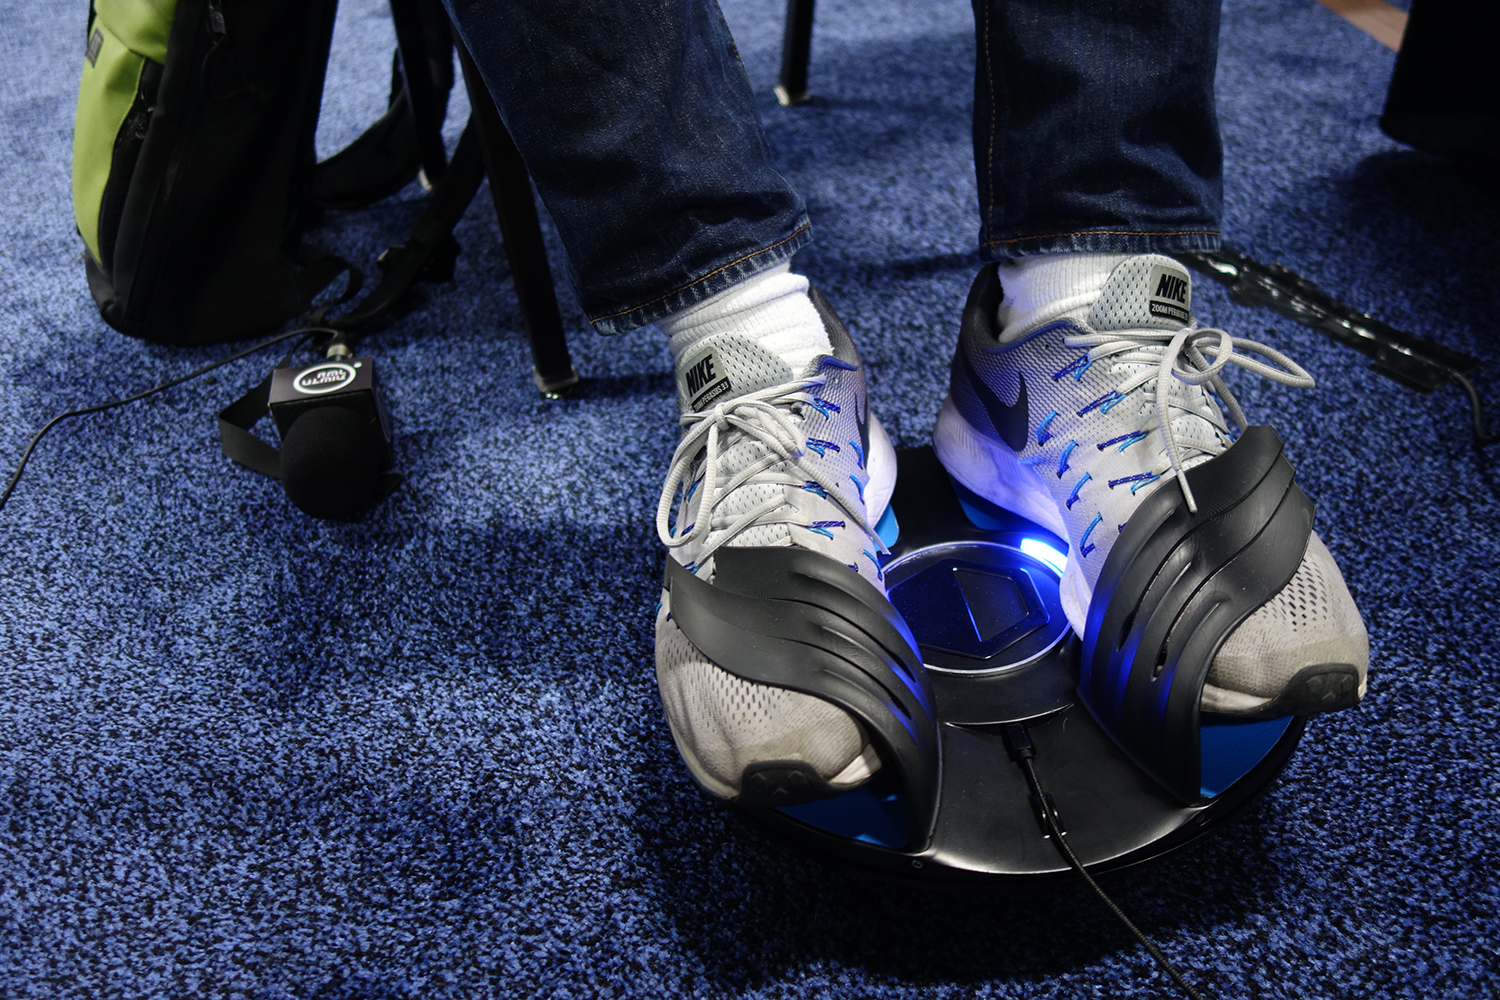 VR Innovations 3drudder shoes offset